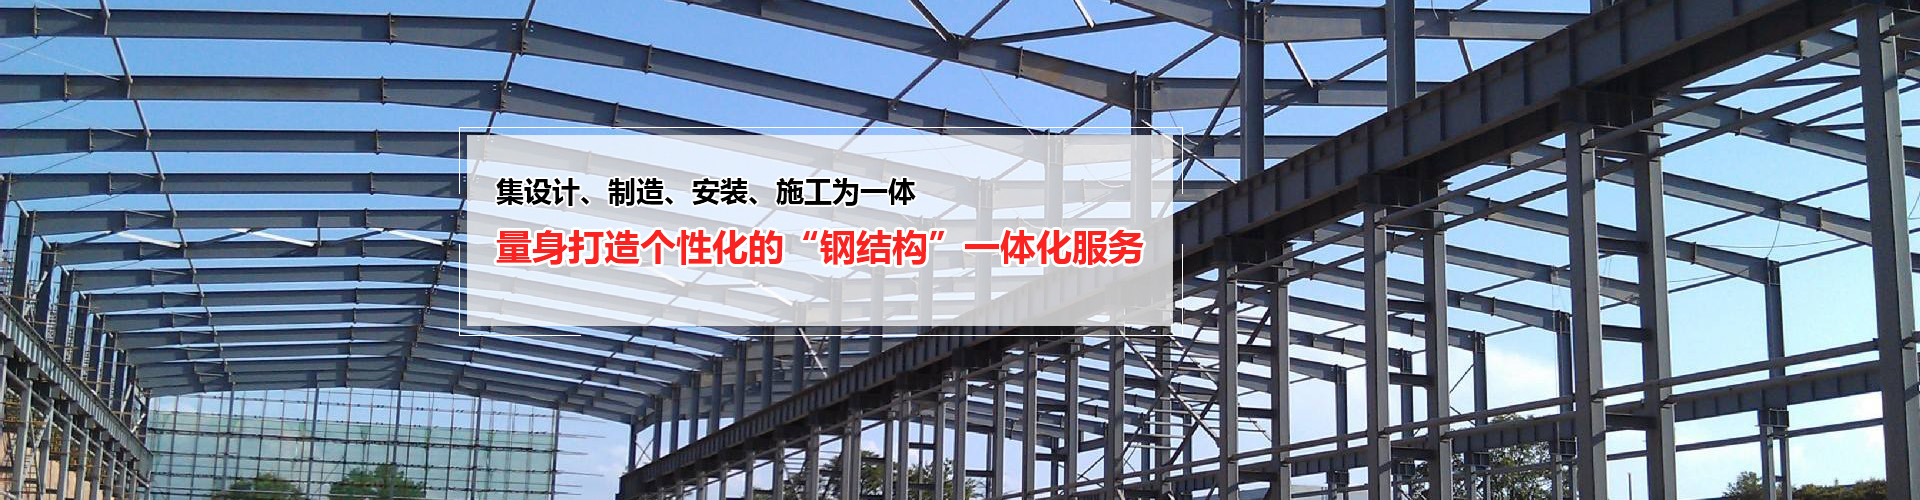 郑州钢结构工程